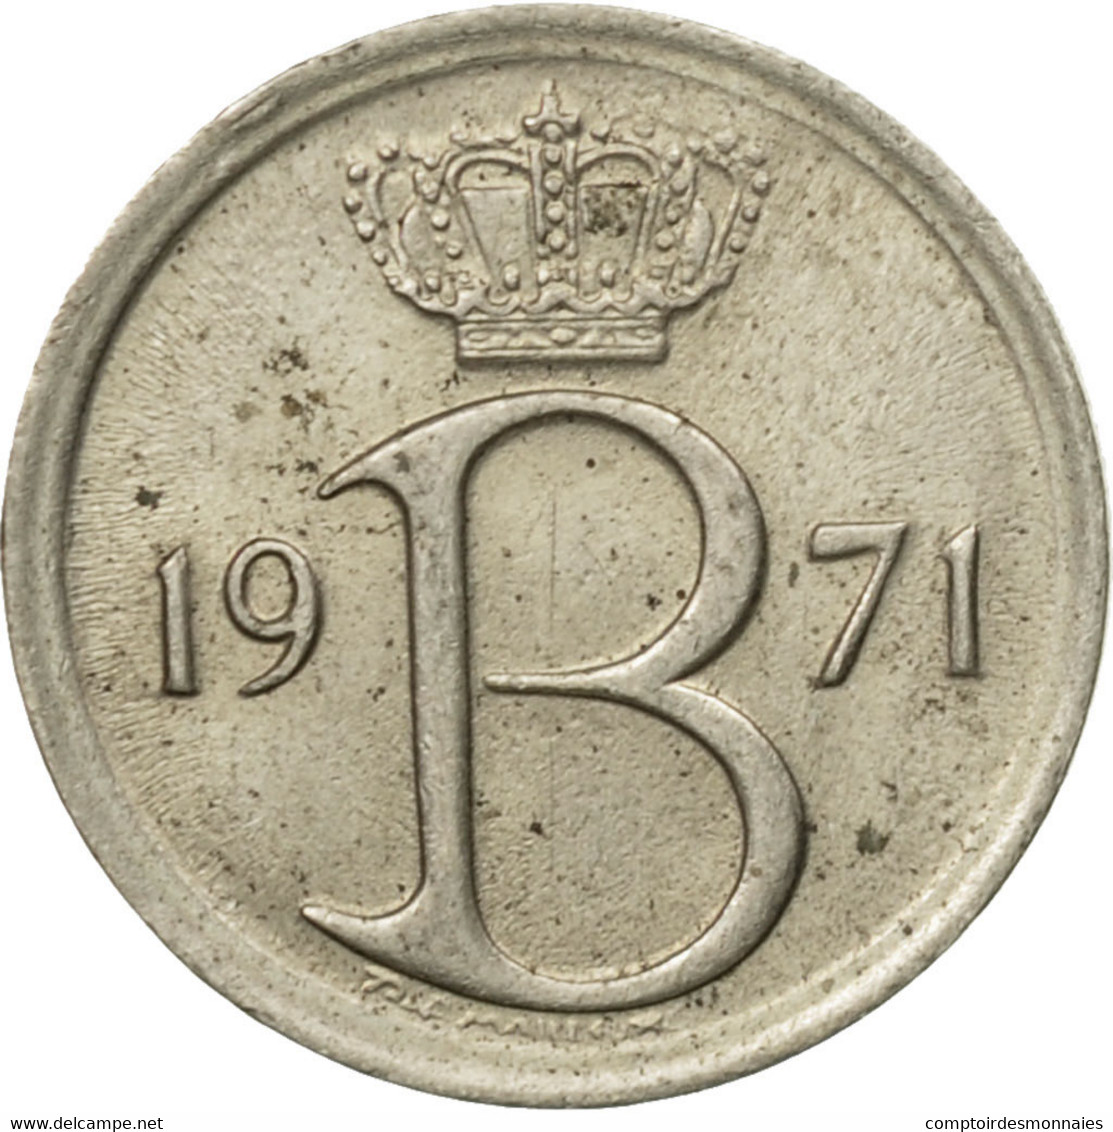 Monnaie, Belgique, 25 Centimes, 1971, Bruxelles, TB, Copper-nickel, KM:154.1 - 25 Centimes